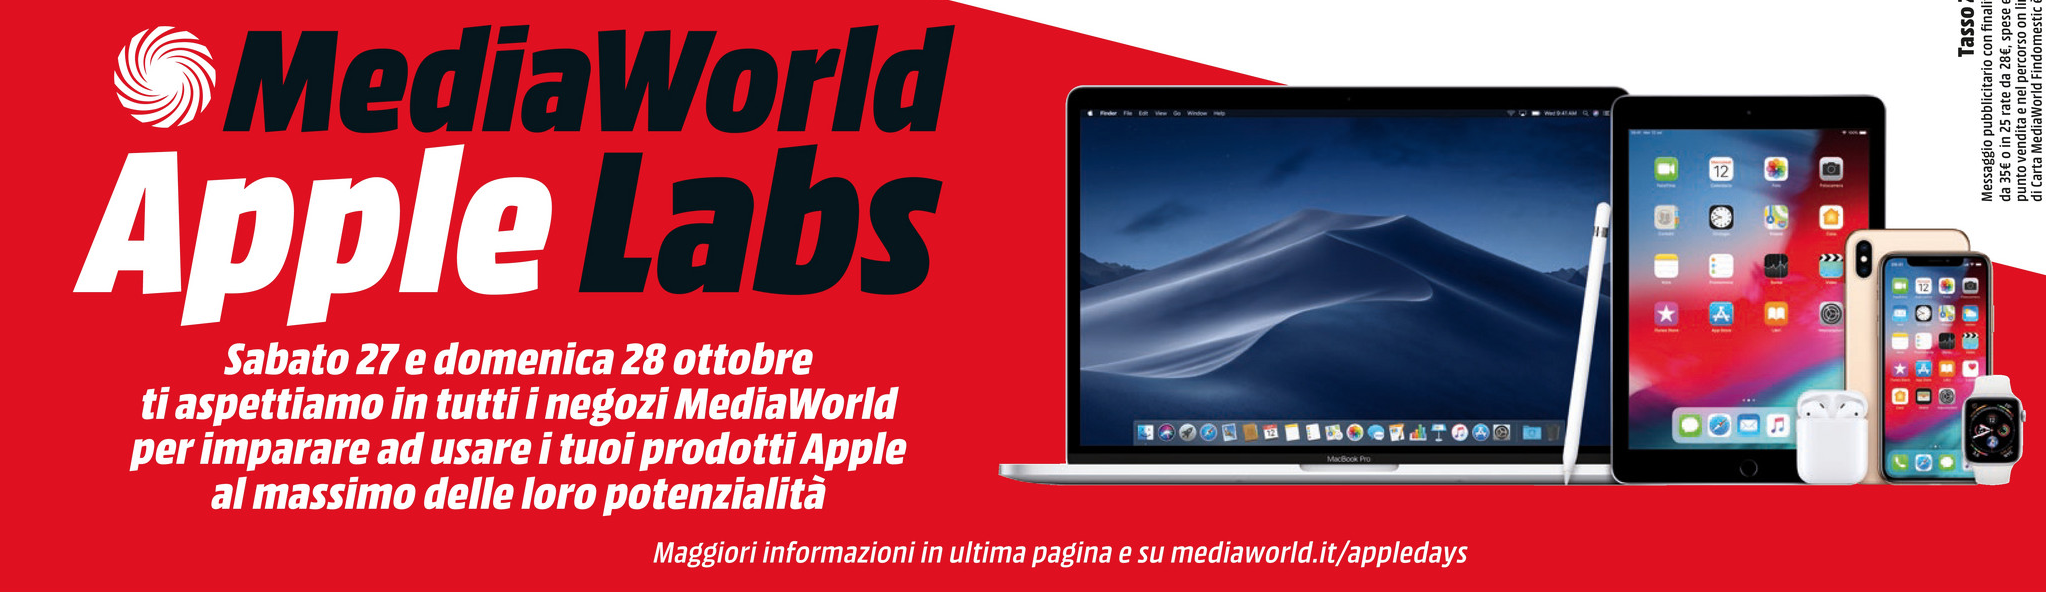 Volantino MediaWorld: arrivano gli Apple Labs con le migliori offerte a tasso zero fino al 28 ottobre 1